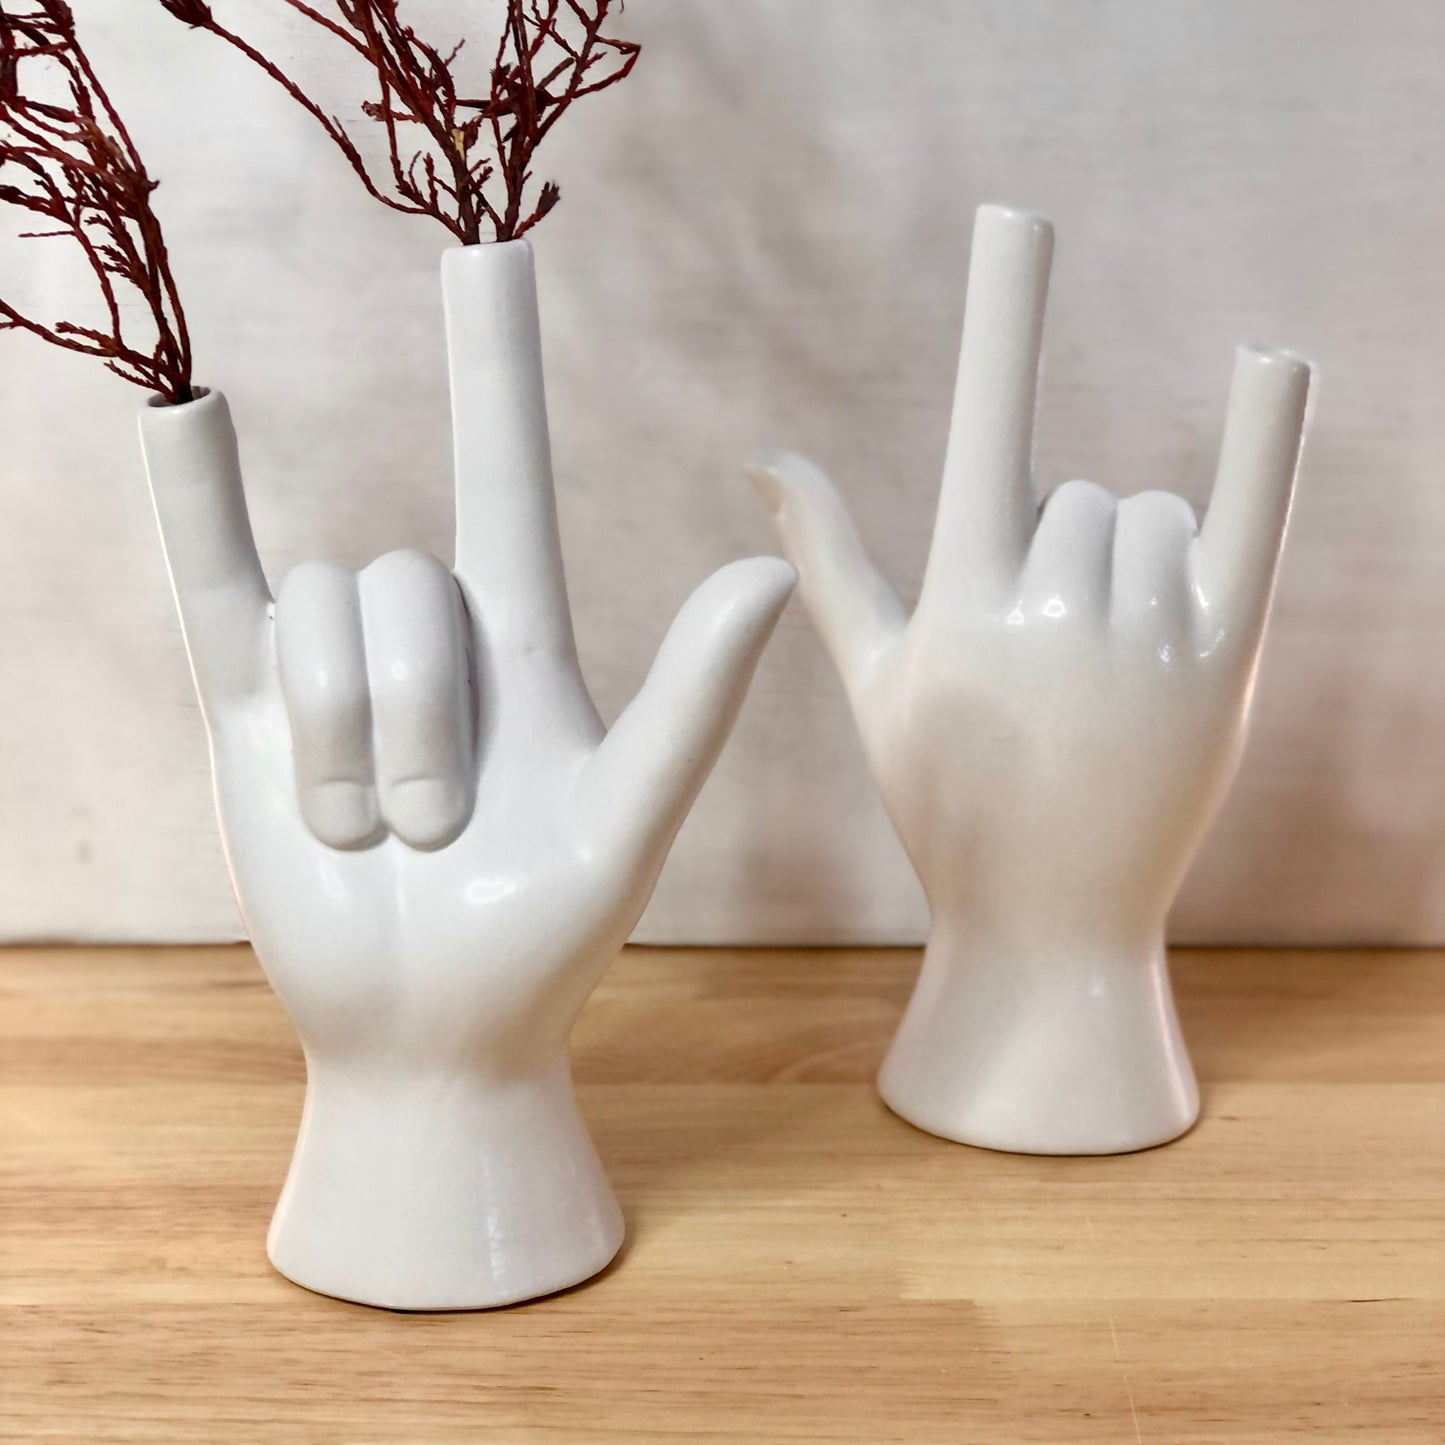 Rock hands ceramic vase statue